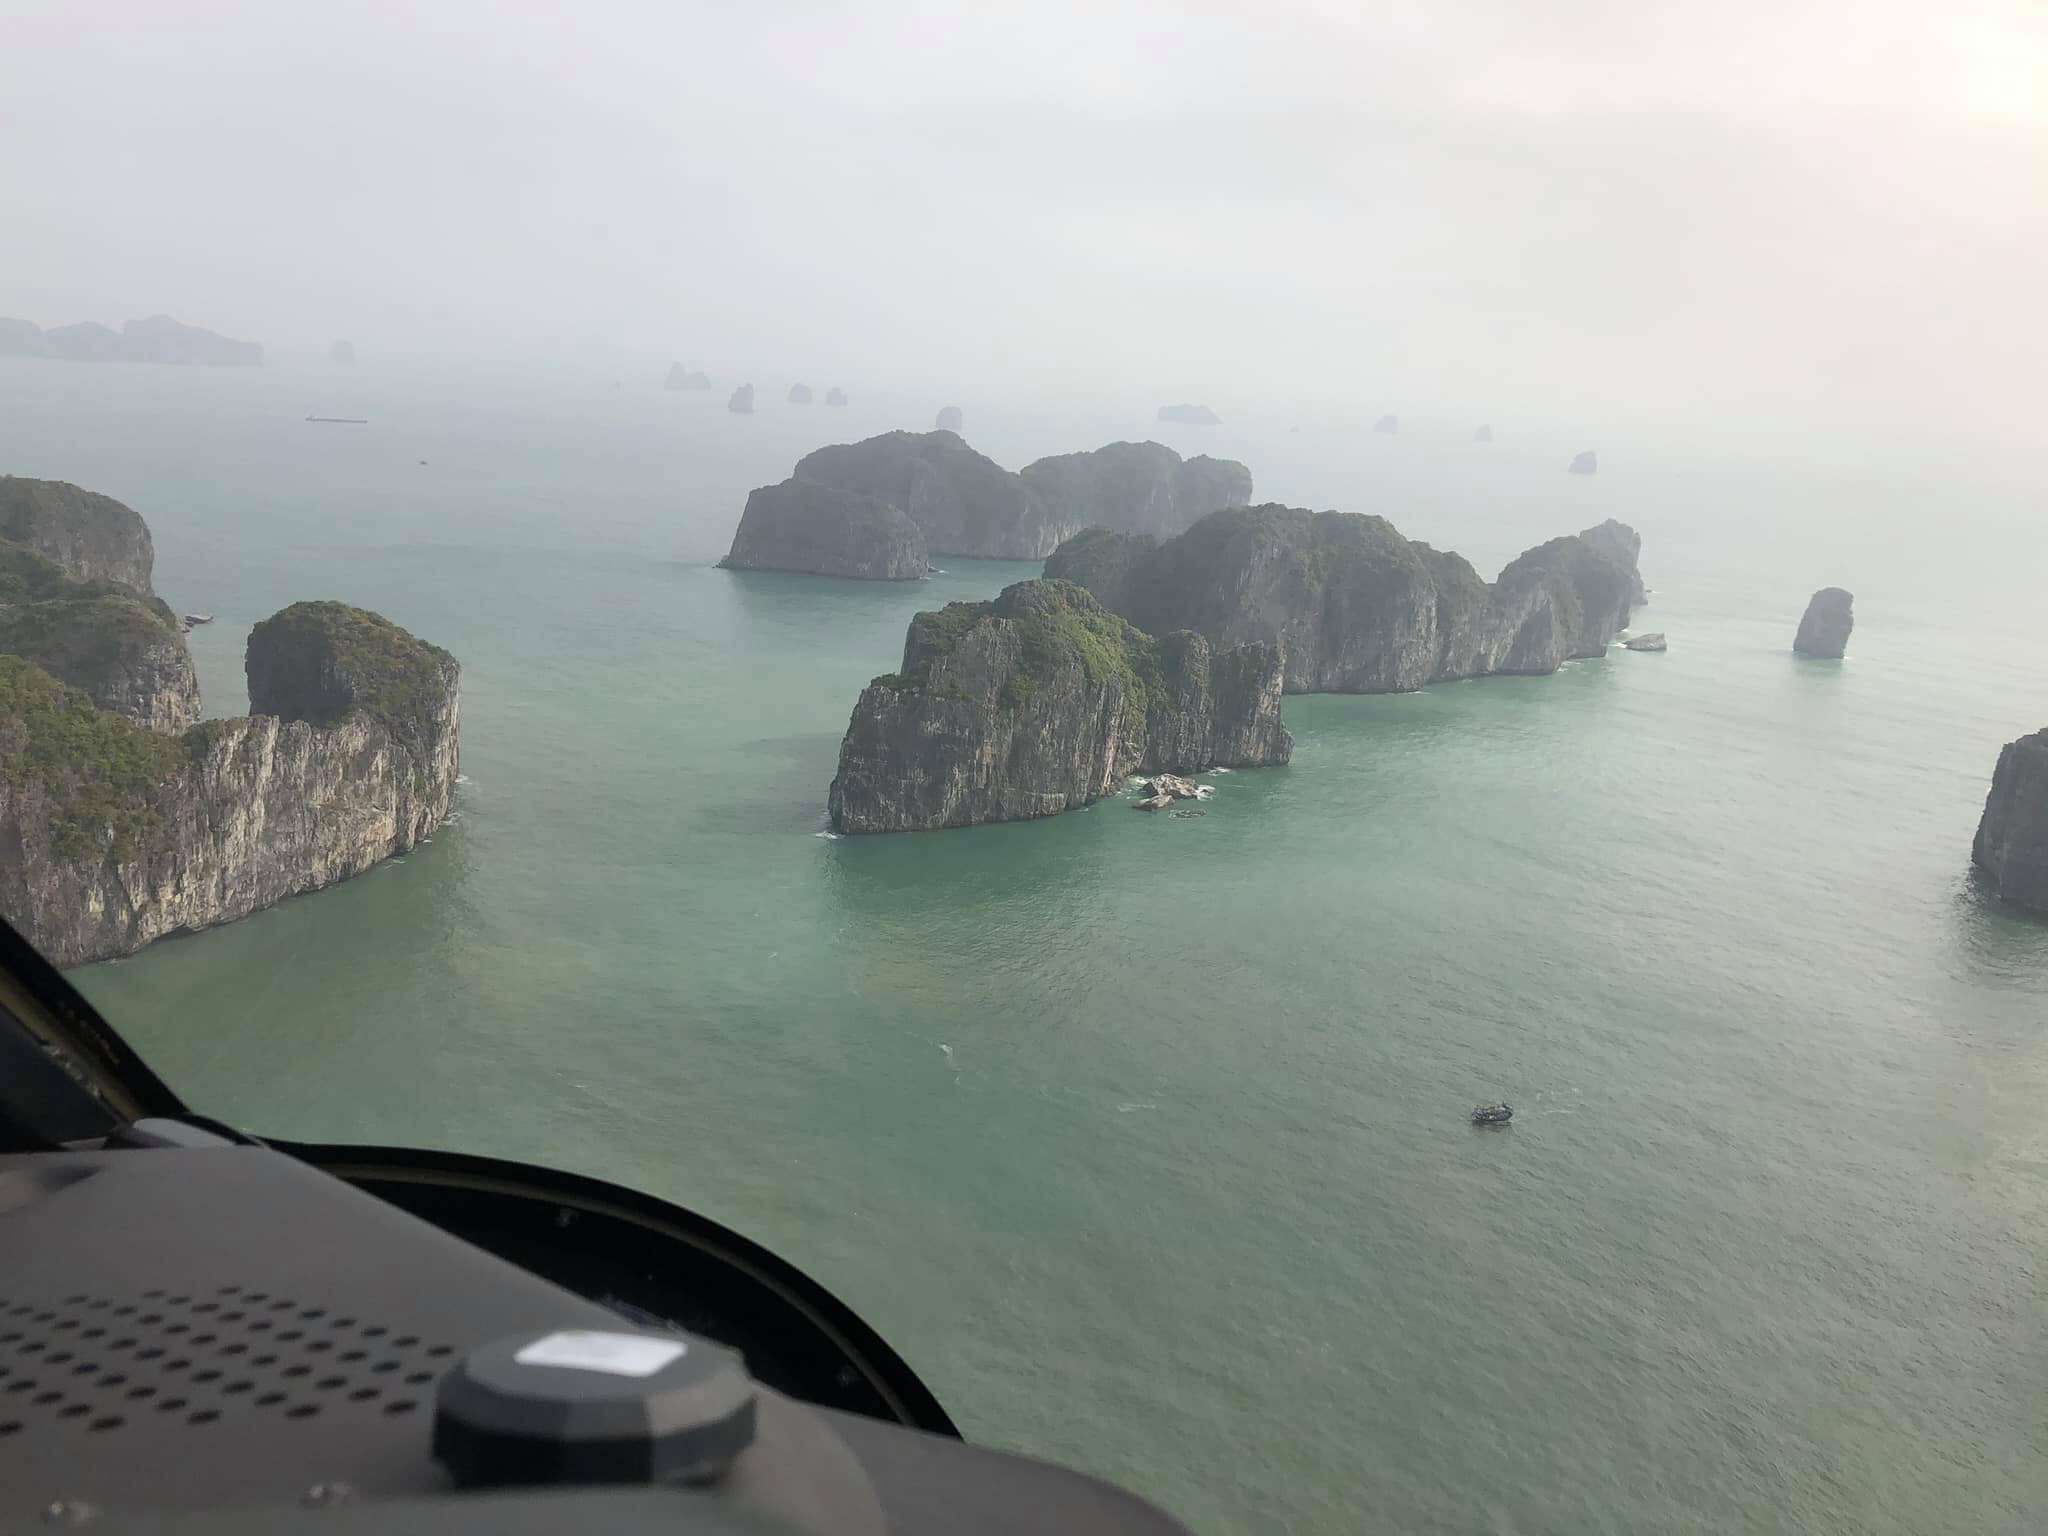 Trên trực thăng ngắm cảnh Vịnh Hạ Long